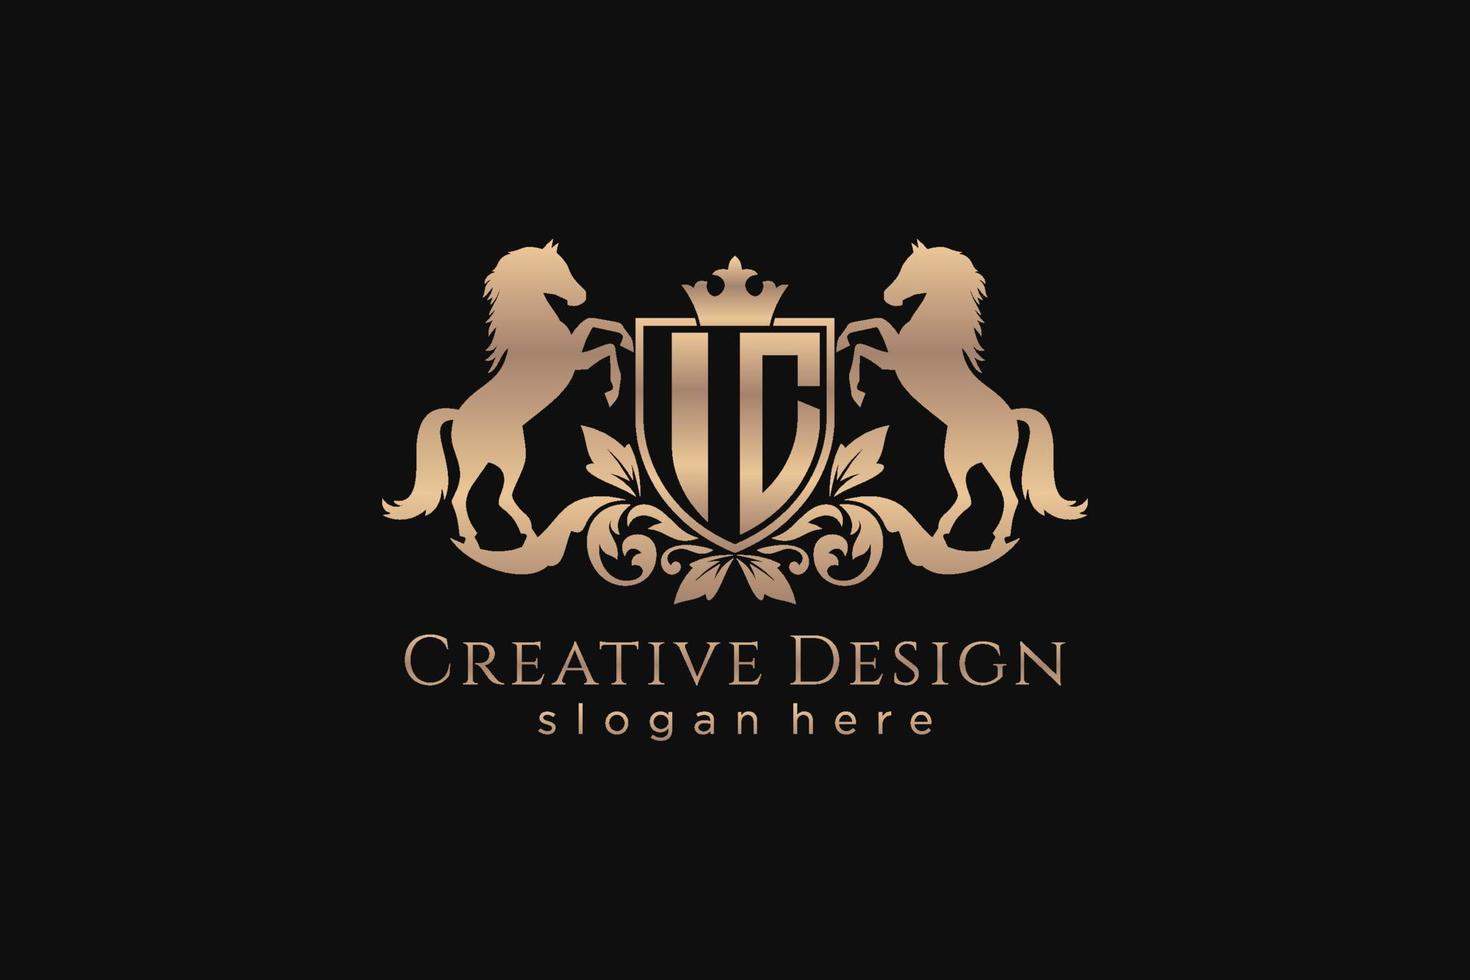 crista dourada retro ic inicial com escudo e dois cavalos, modelo de crachá com pergaminhos e coroa real - perfeito para projetos de marca luxuosos vetor